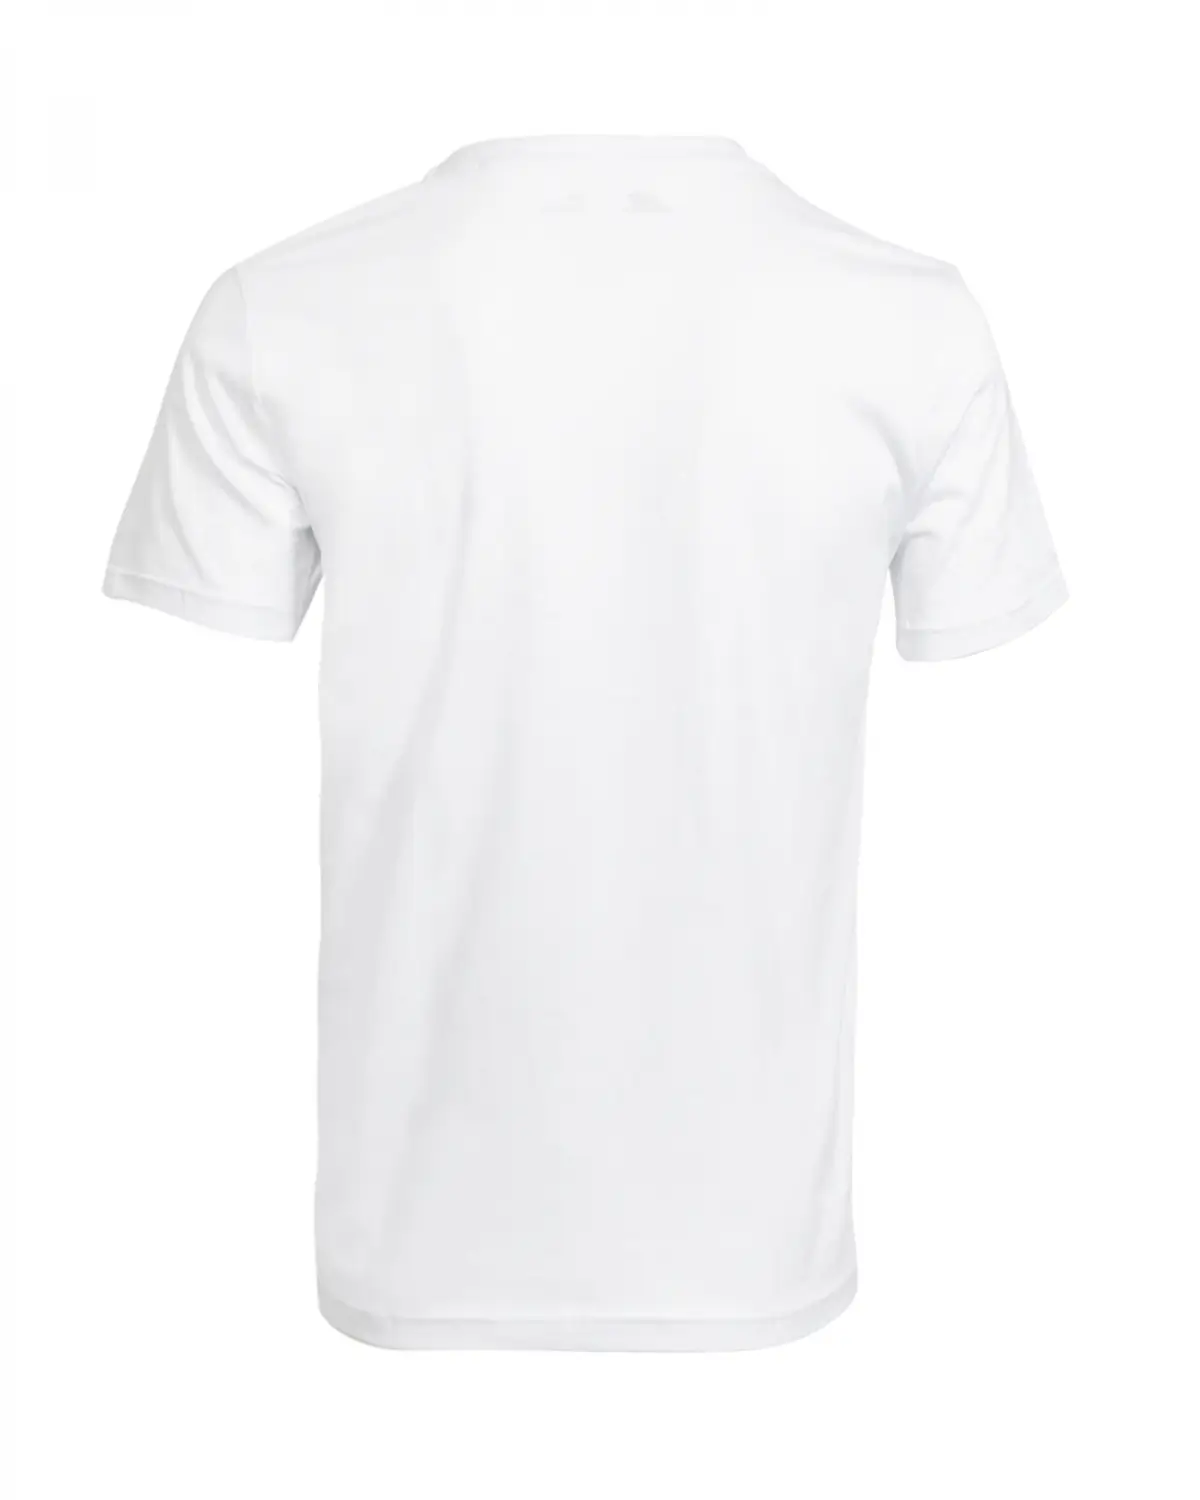 New Balance Lifestyle Tee Beyaz Erkek Tişört - MPC3150-WT